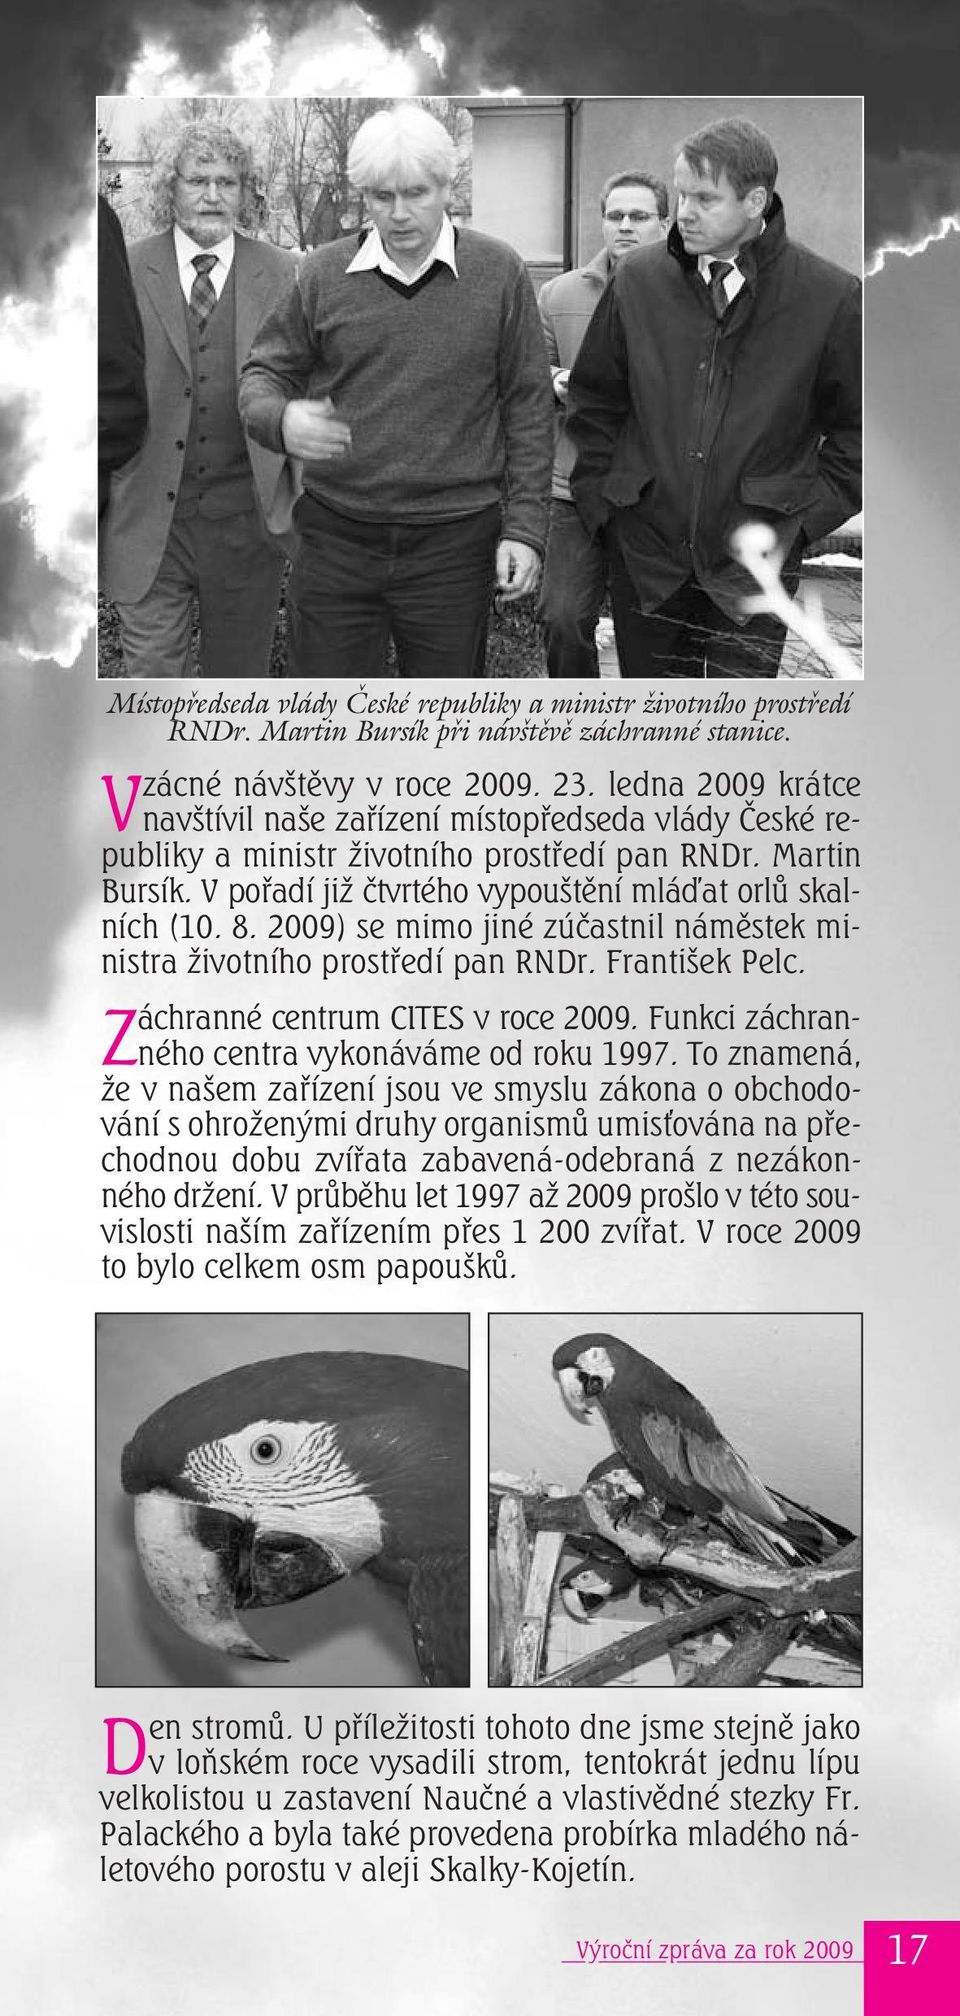 2009) se mimo jiné zúčastnil náměstek ministra životního prostředí pan RNDr. František Pelc. áchranné centrum CITES v roce 2009. Funkci záchran- centra vykonáváme od roku 1997.